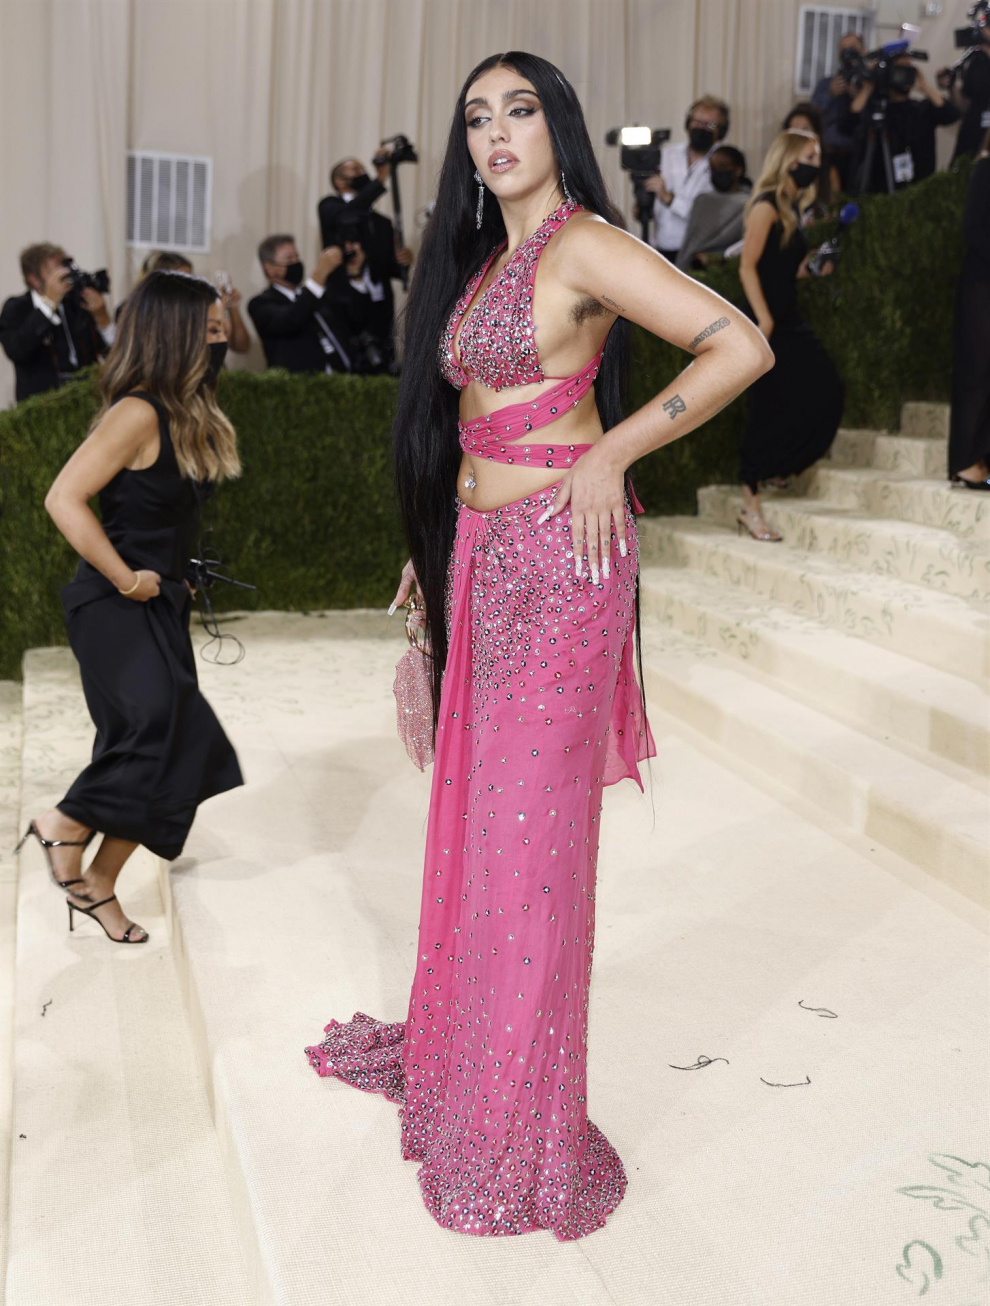 La hija de Madonna, con vestido rosa inspirado en Cher